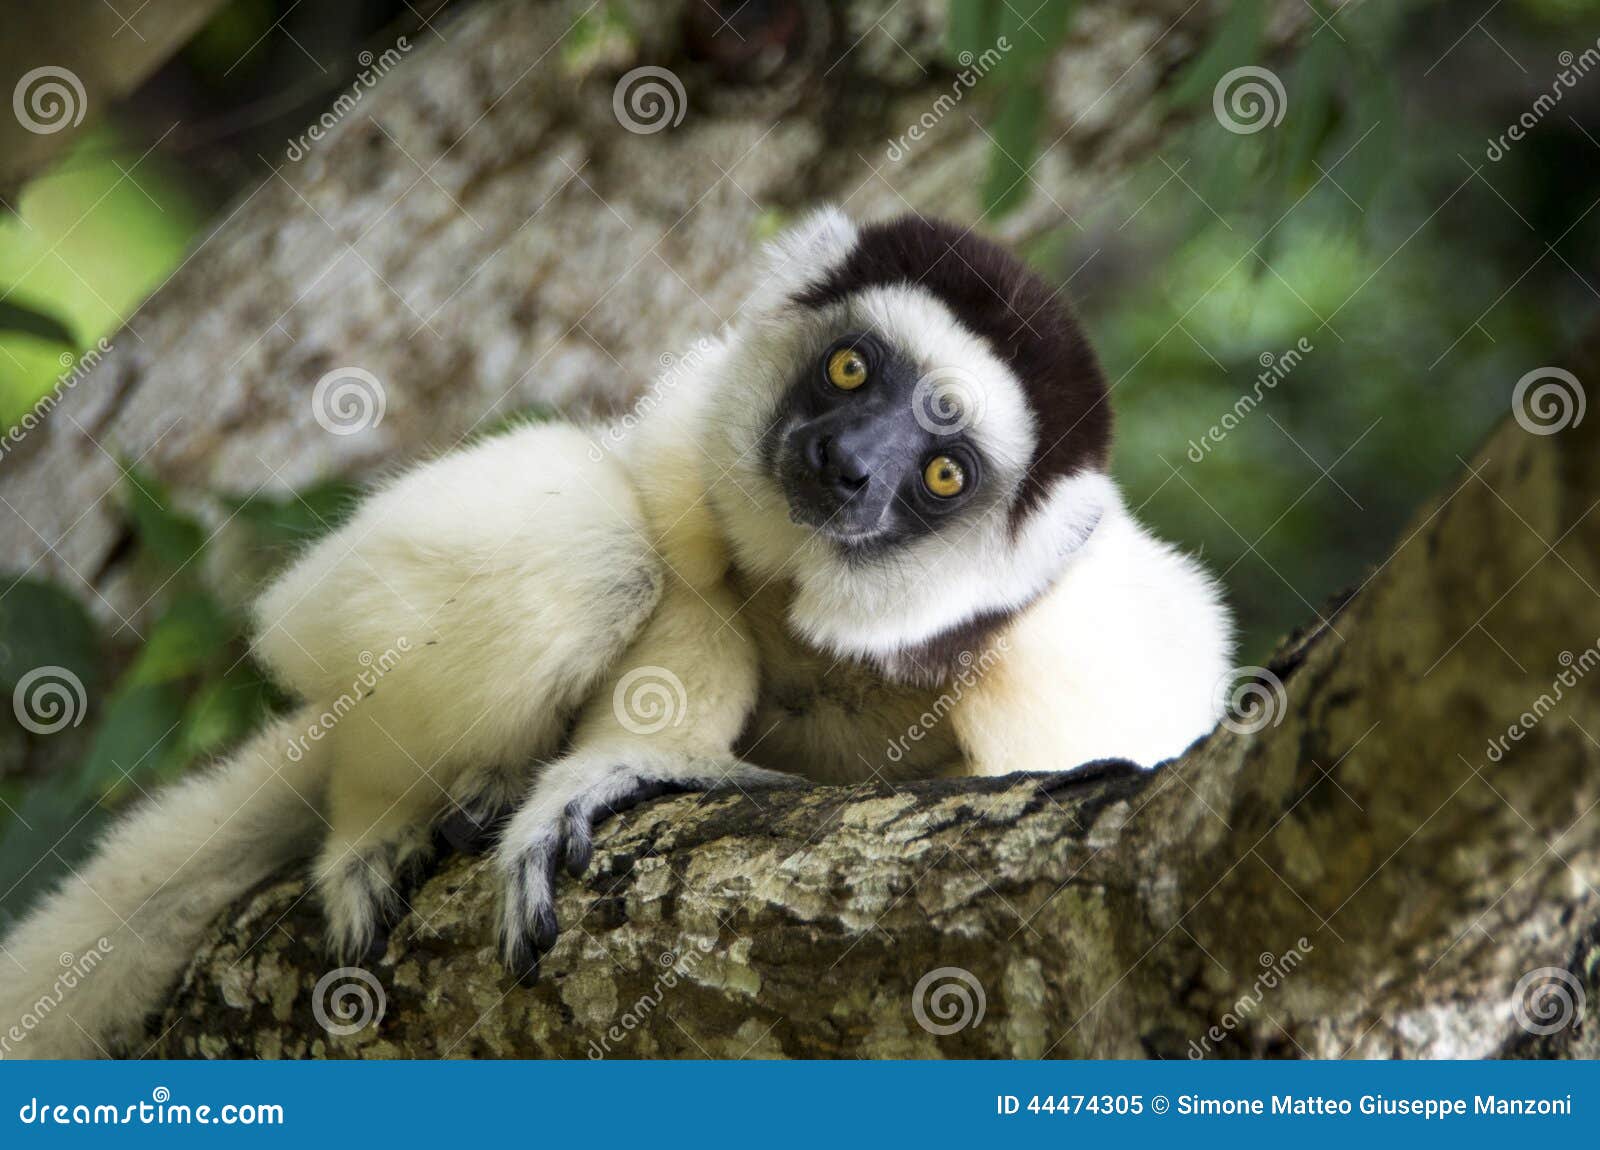 sifaka lemur, madagascar